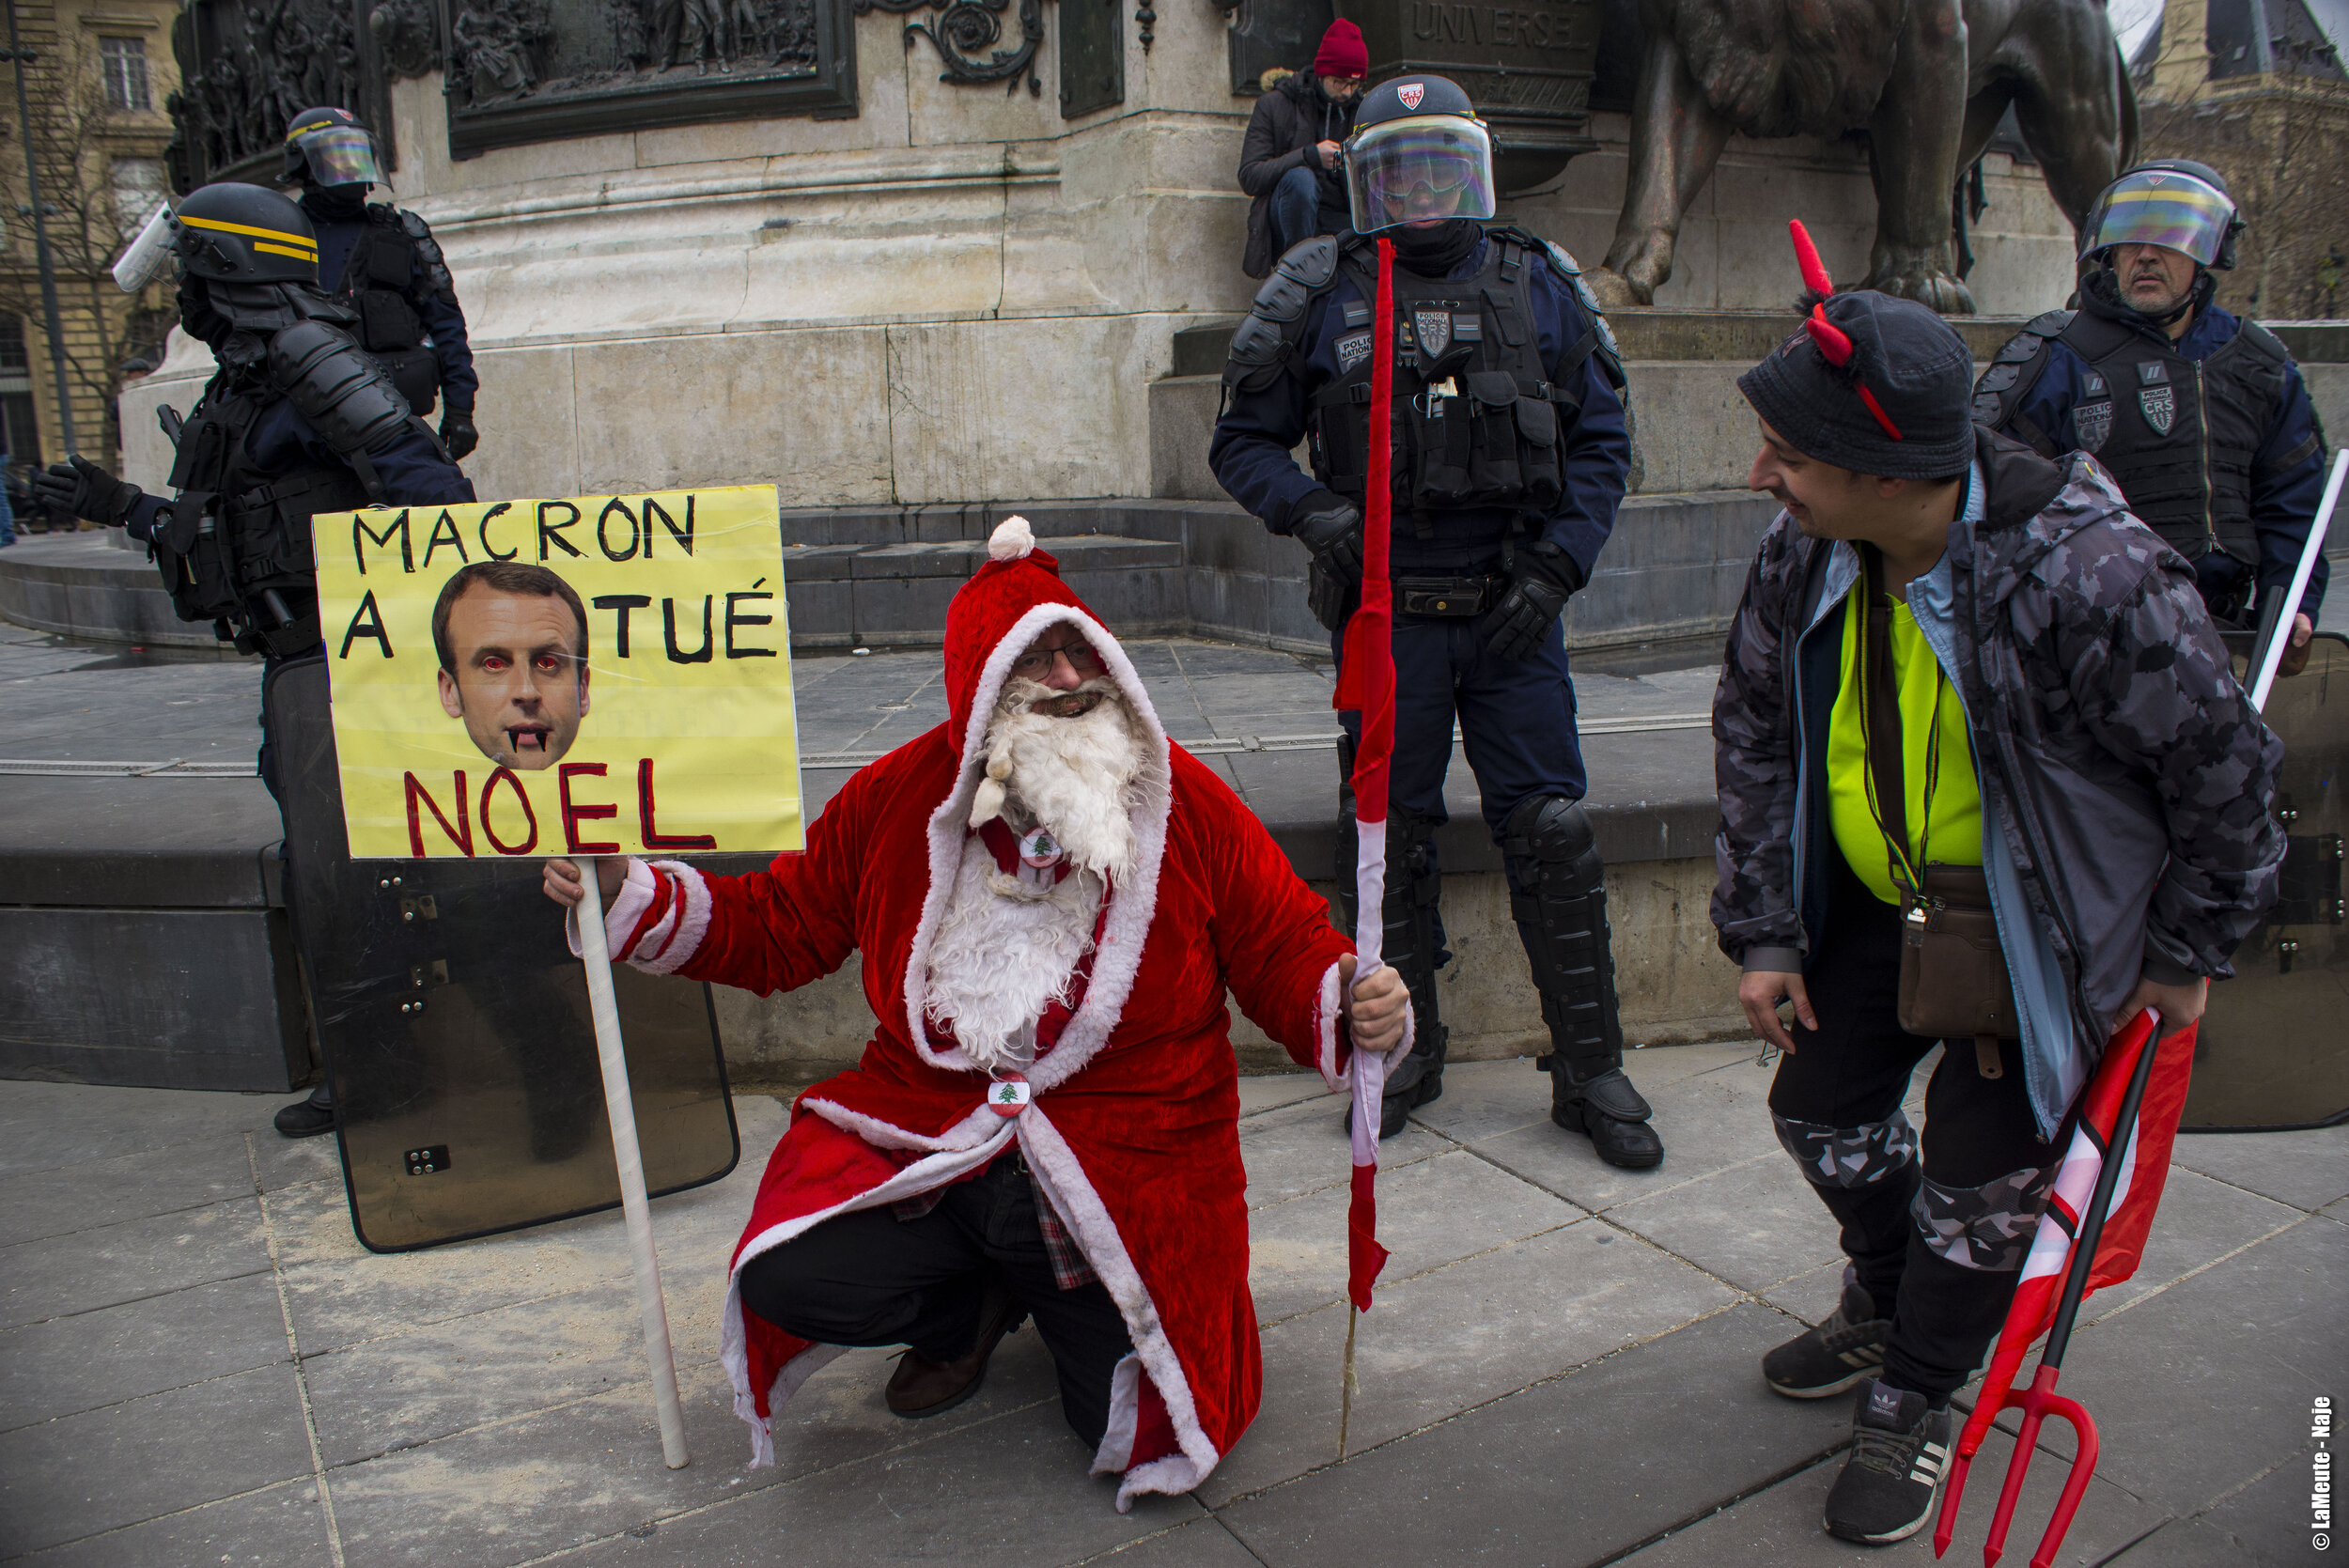   Arrivé à la hauteur de République, le dispositif policier a choisi de boucler la moitié de la place. Un manifestant déguisé en Père Noël prend la pose devant un cordon de CRS.  ©LaMeute - Naje.      